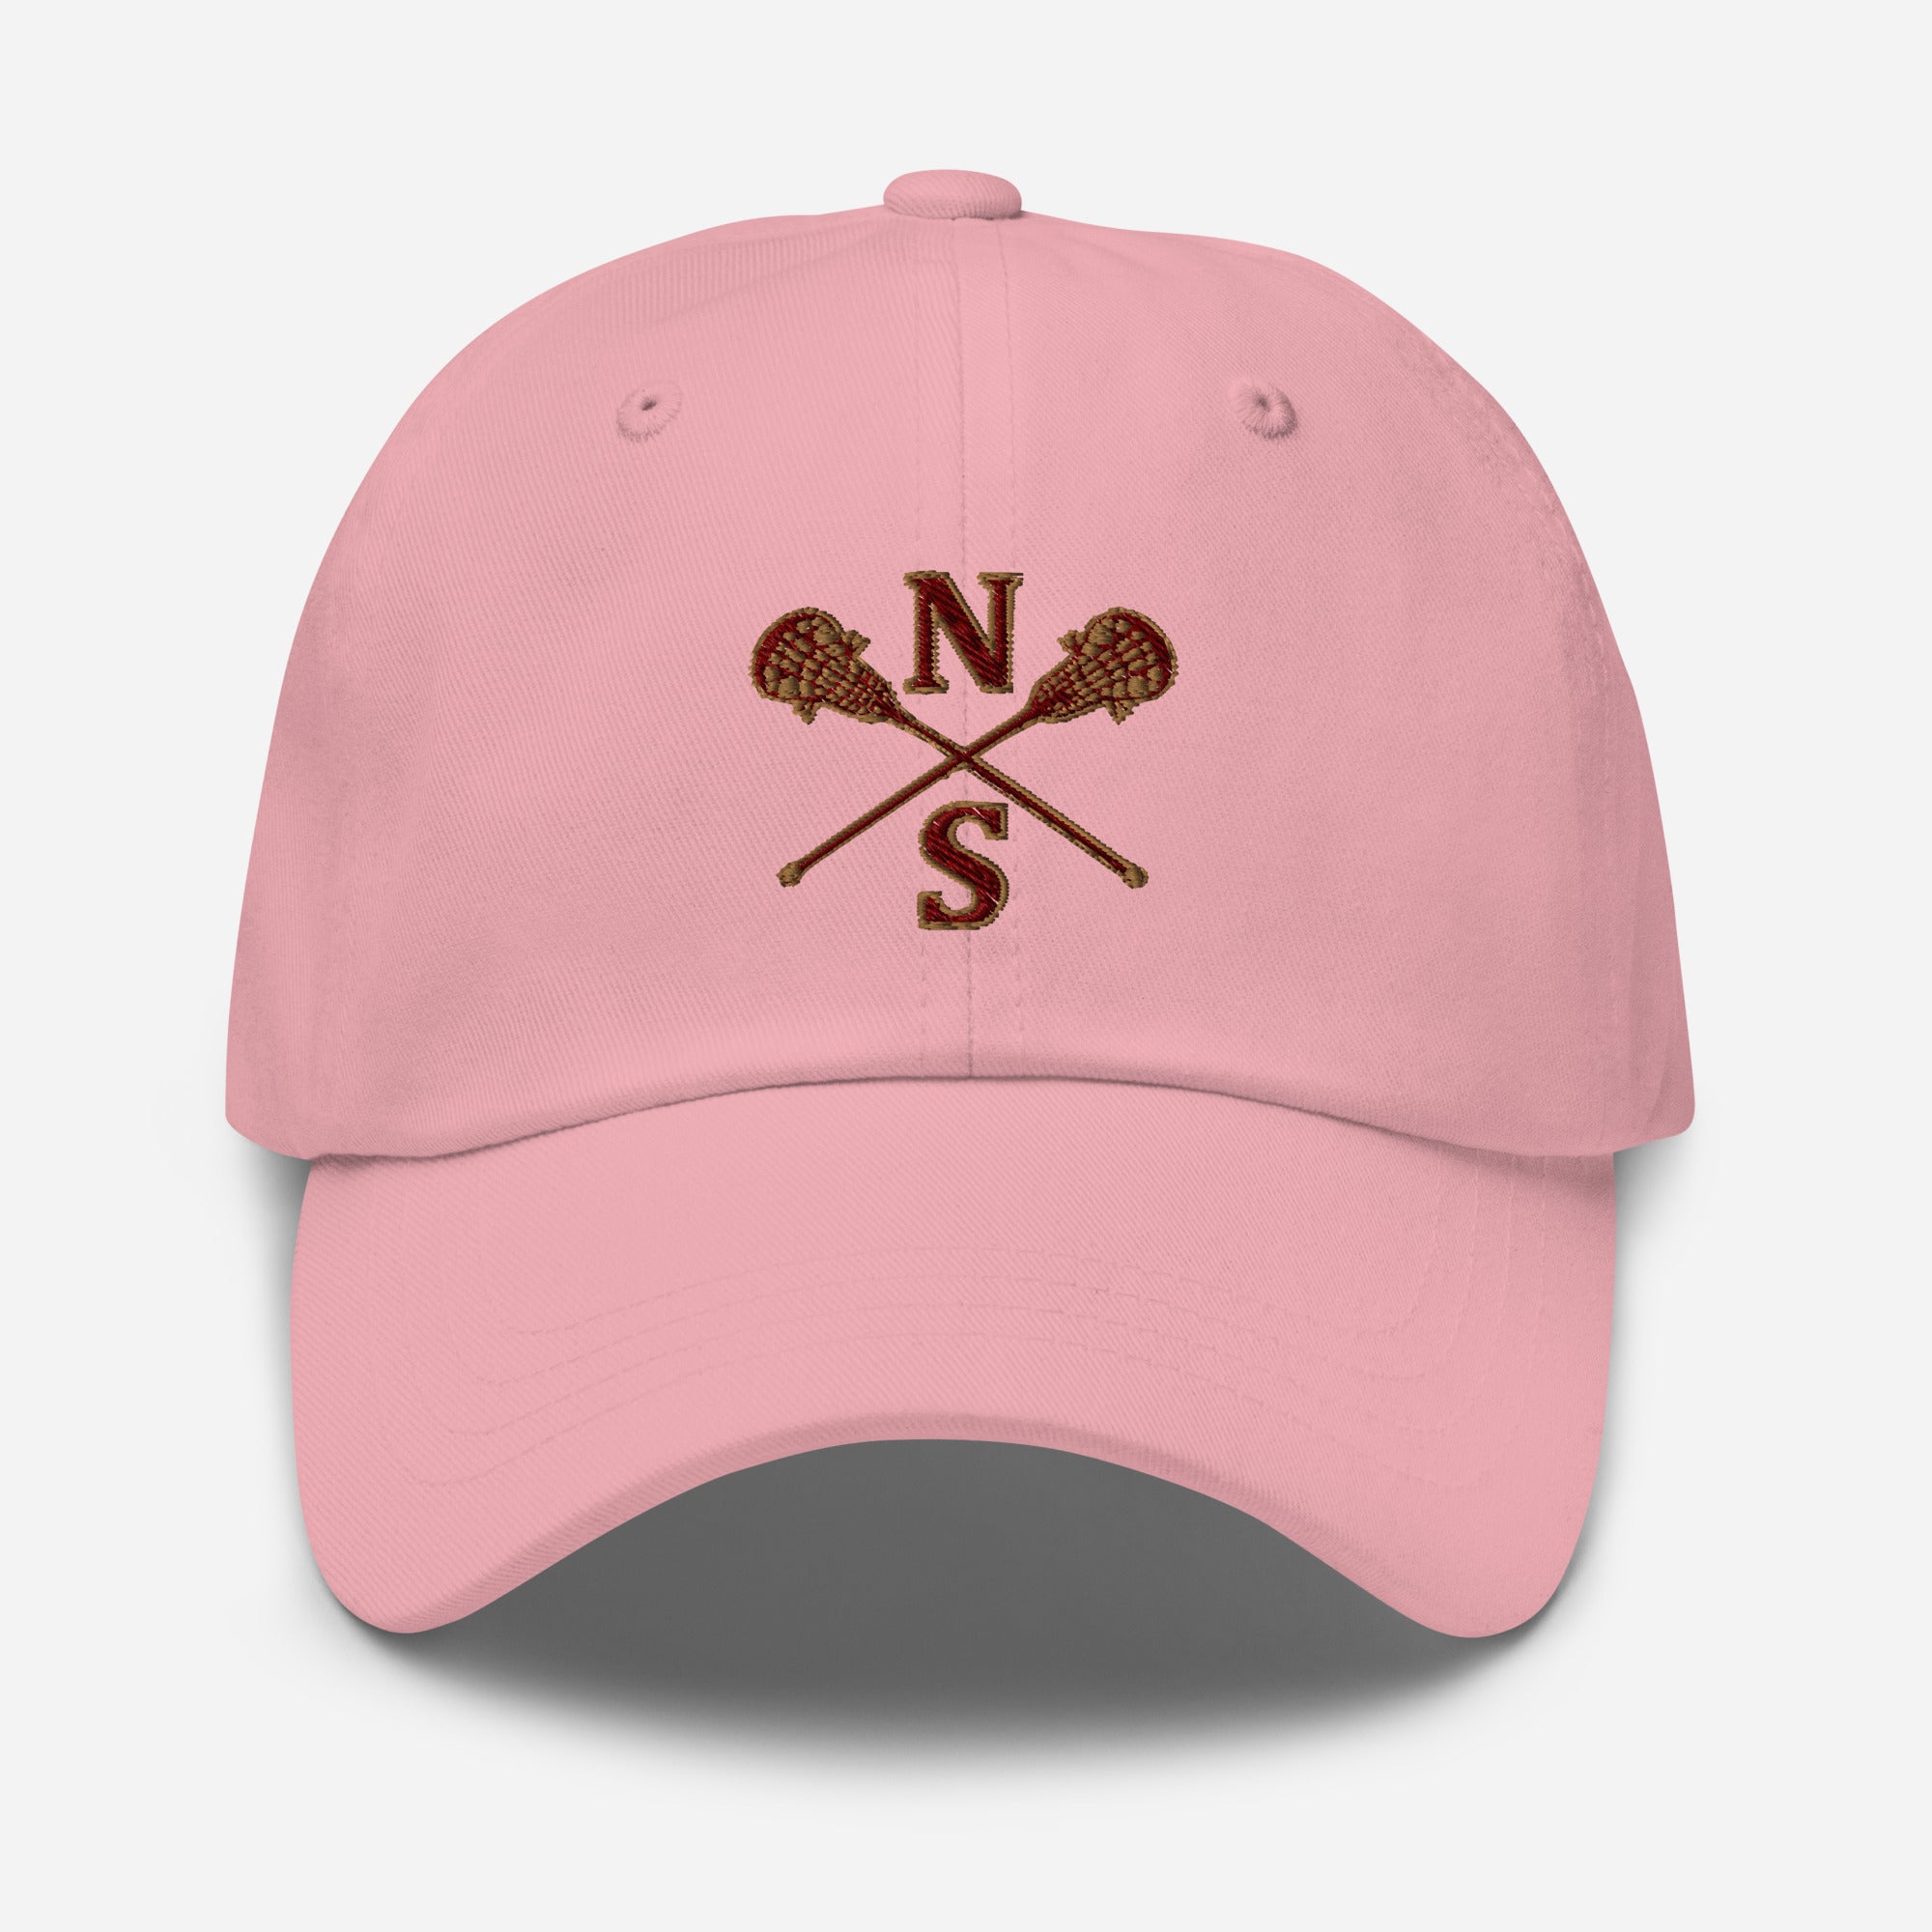 N-S Dad hat (Girls Logo)